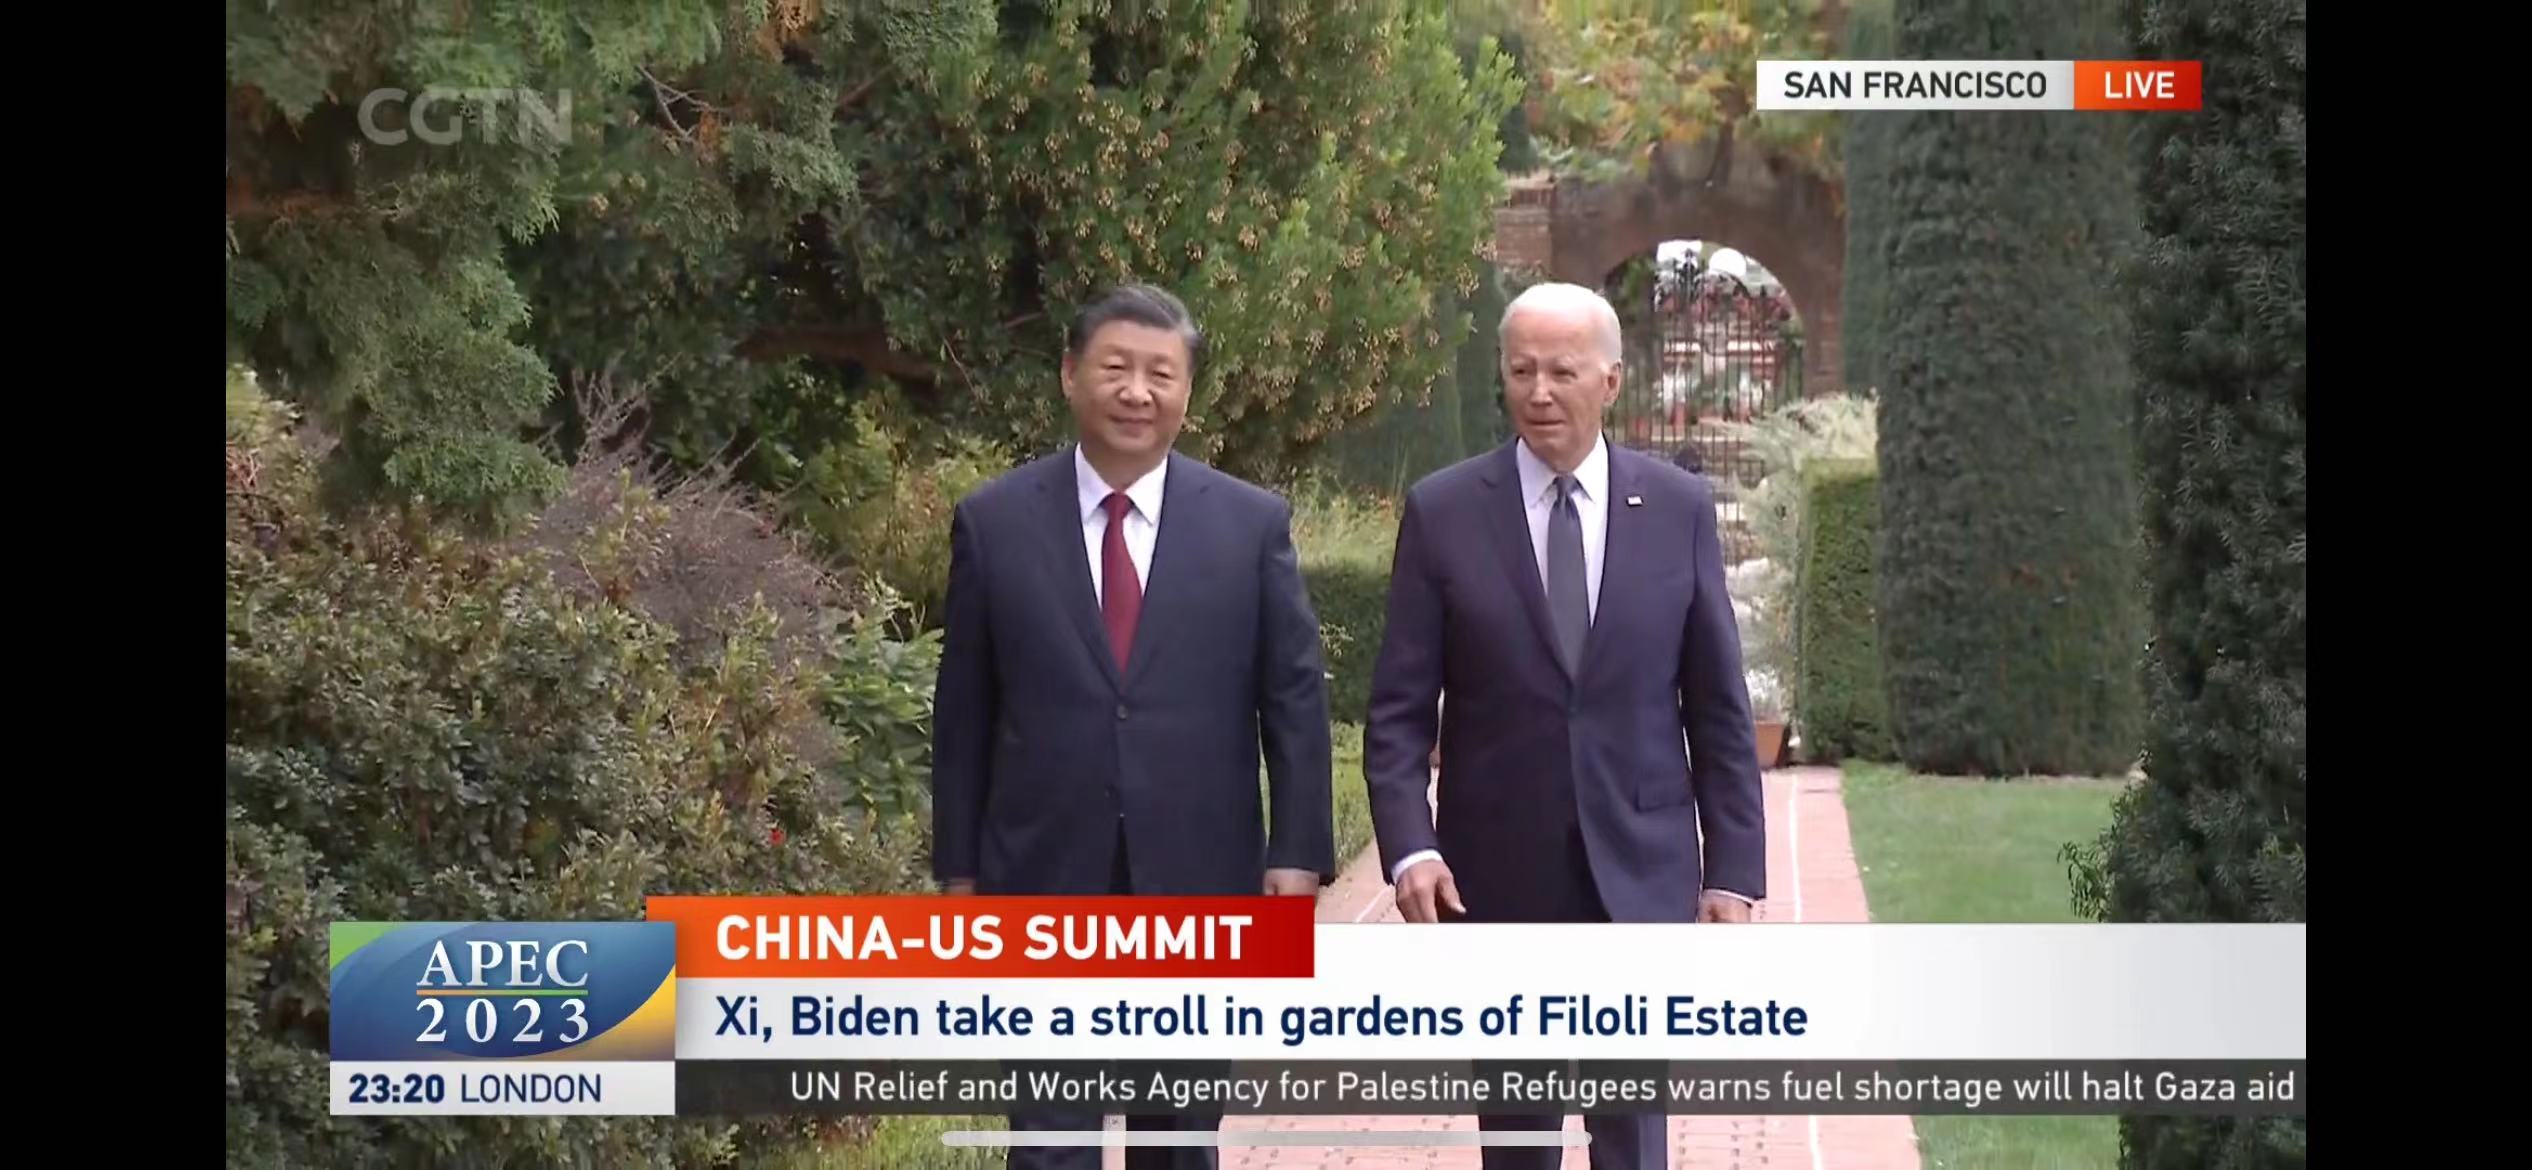 सी चिनफिङ र अमेरिकाका राष्ट्रपति बाइडेनबीच चीन-अमेरिका राष्ट्रनायक वार्ताको आयोजना